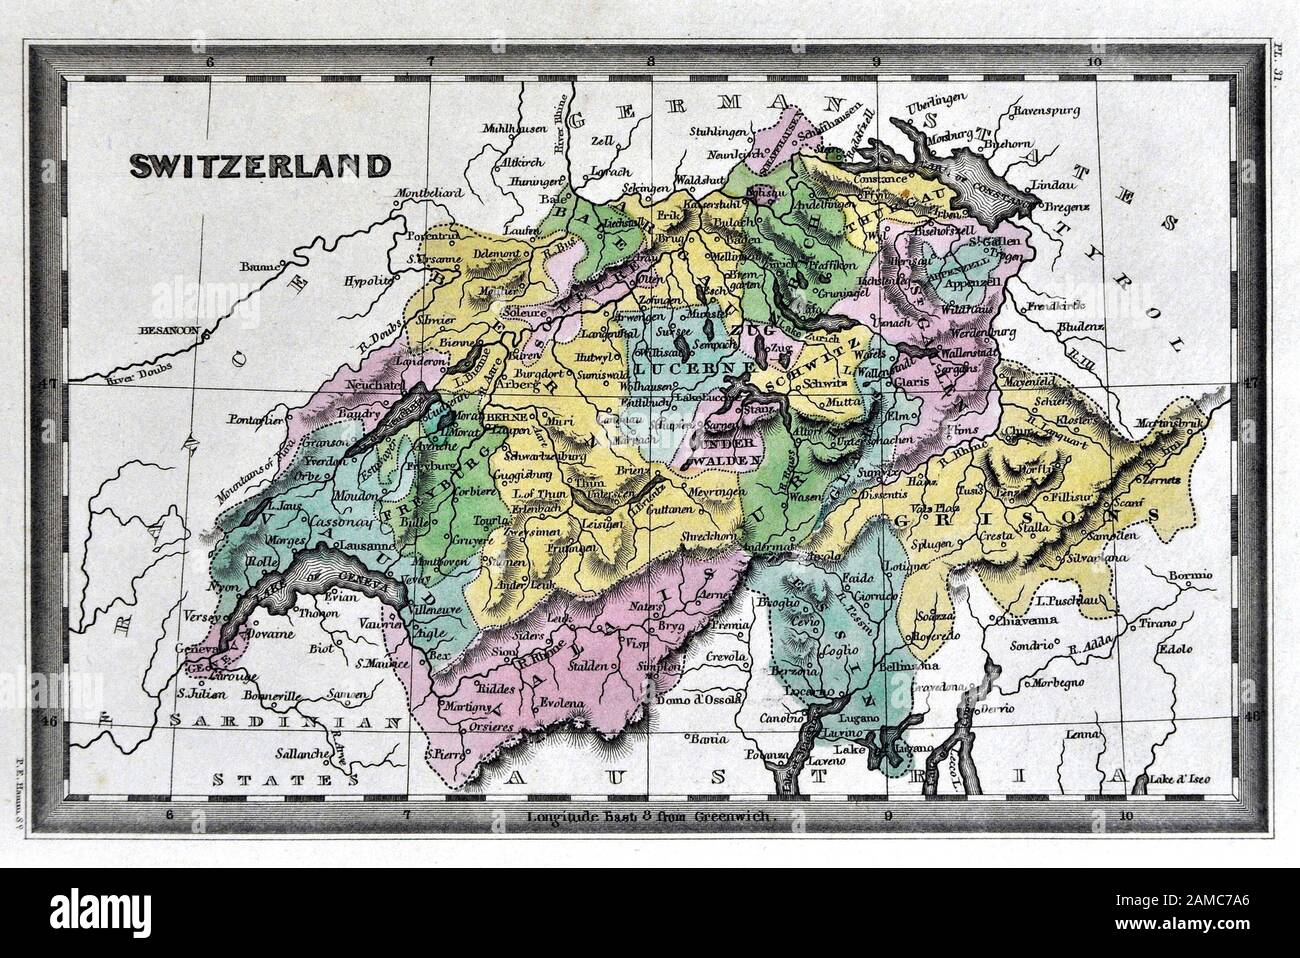 Geneva Genf Berne Bern Zurich Zürich Basel Basle plans 1920 map SWITZERLAND 